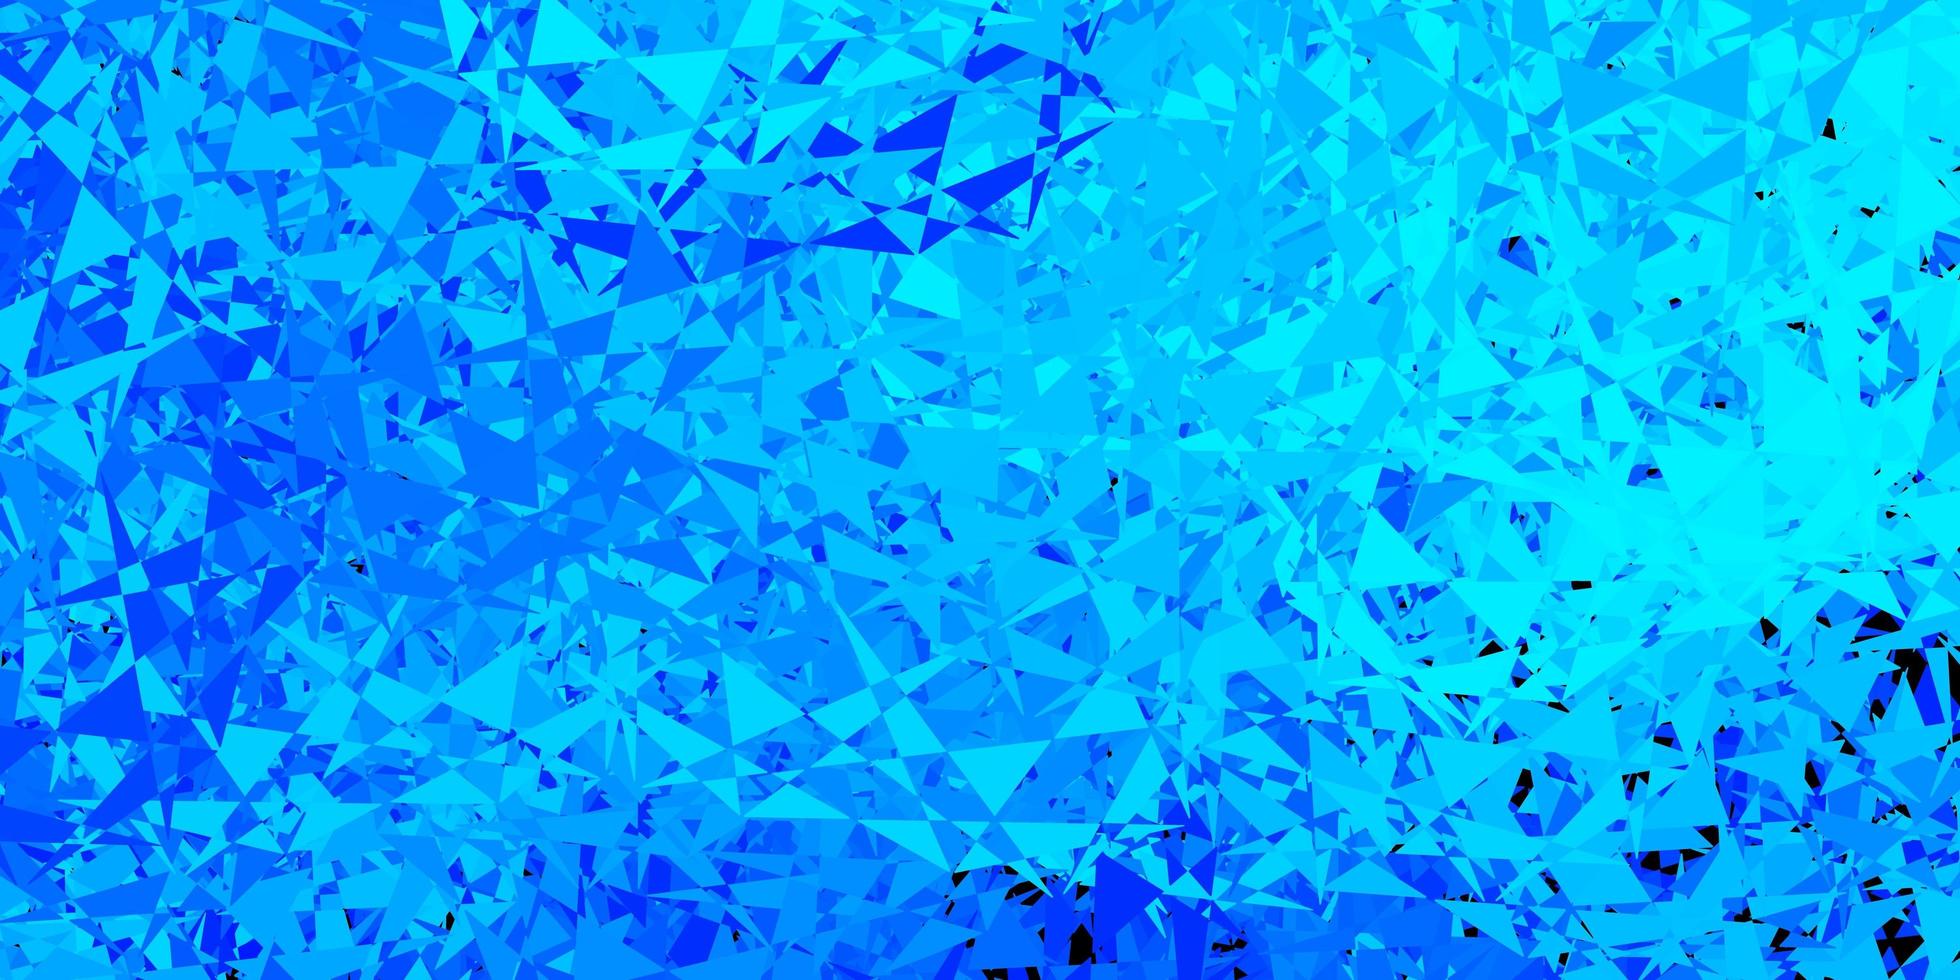 fond de vecteur bleu clair avec des formes polygonales.